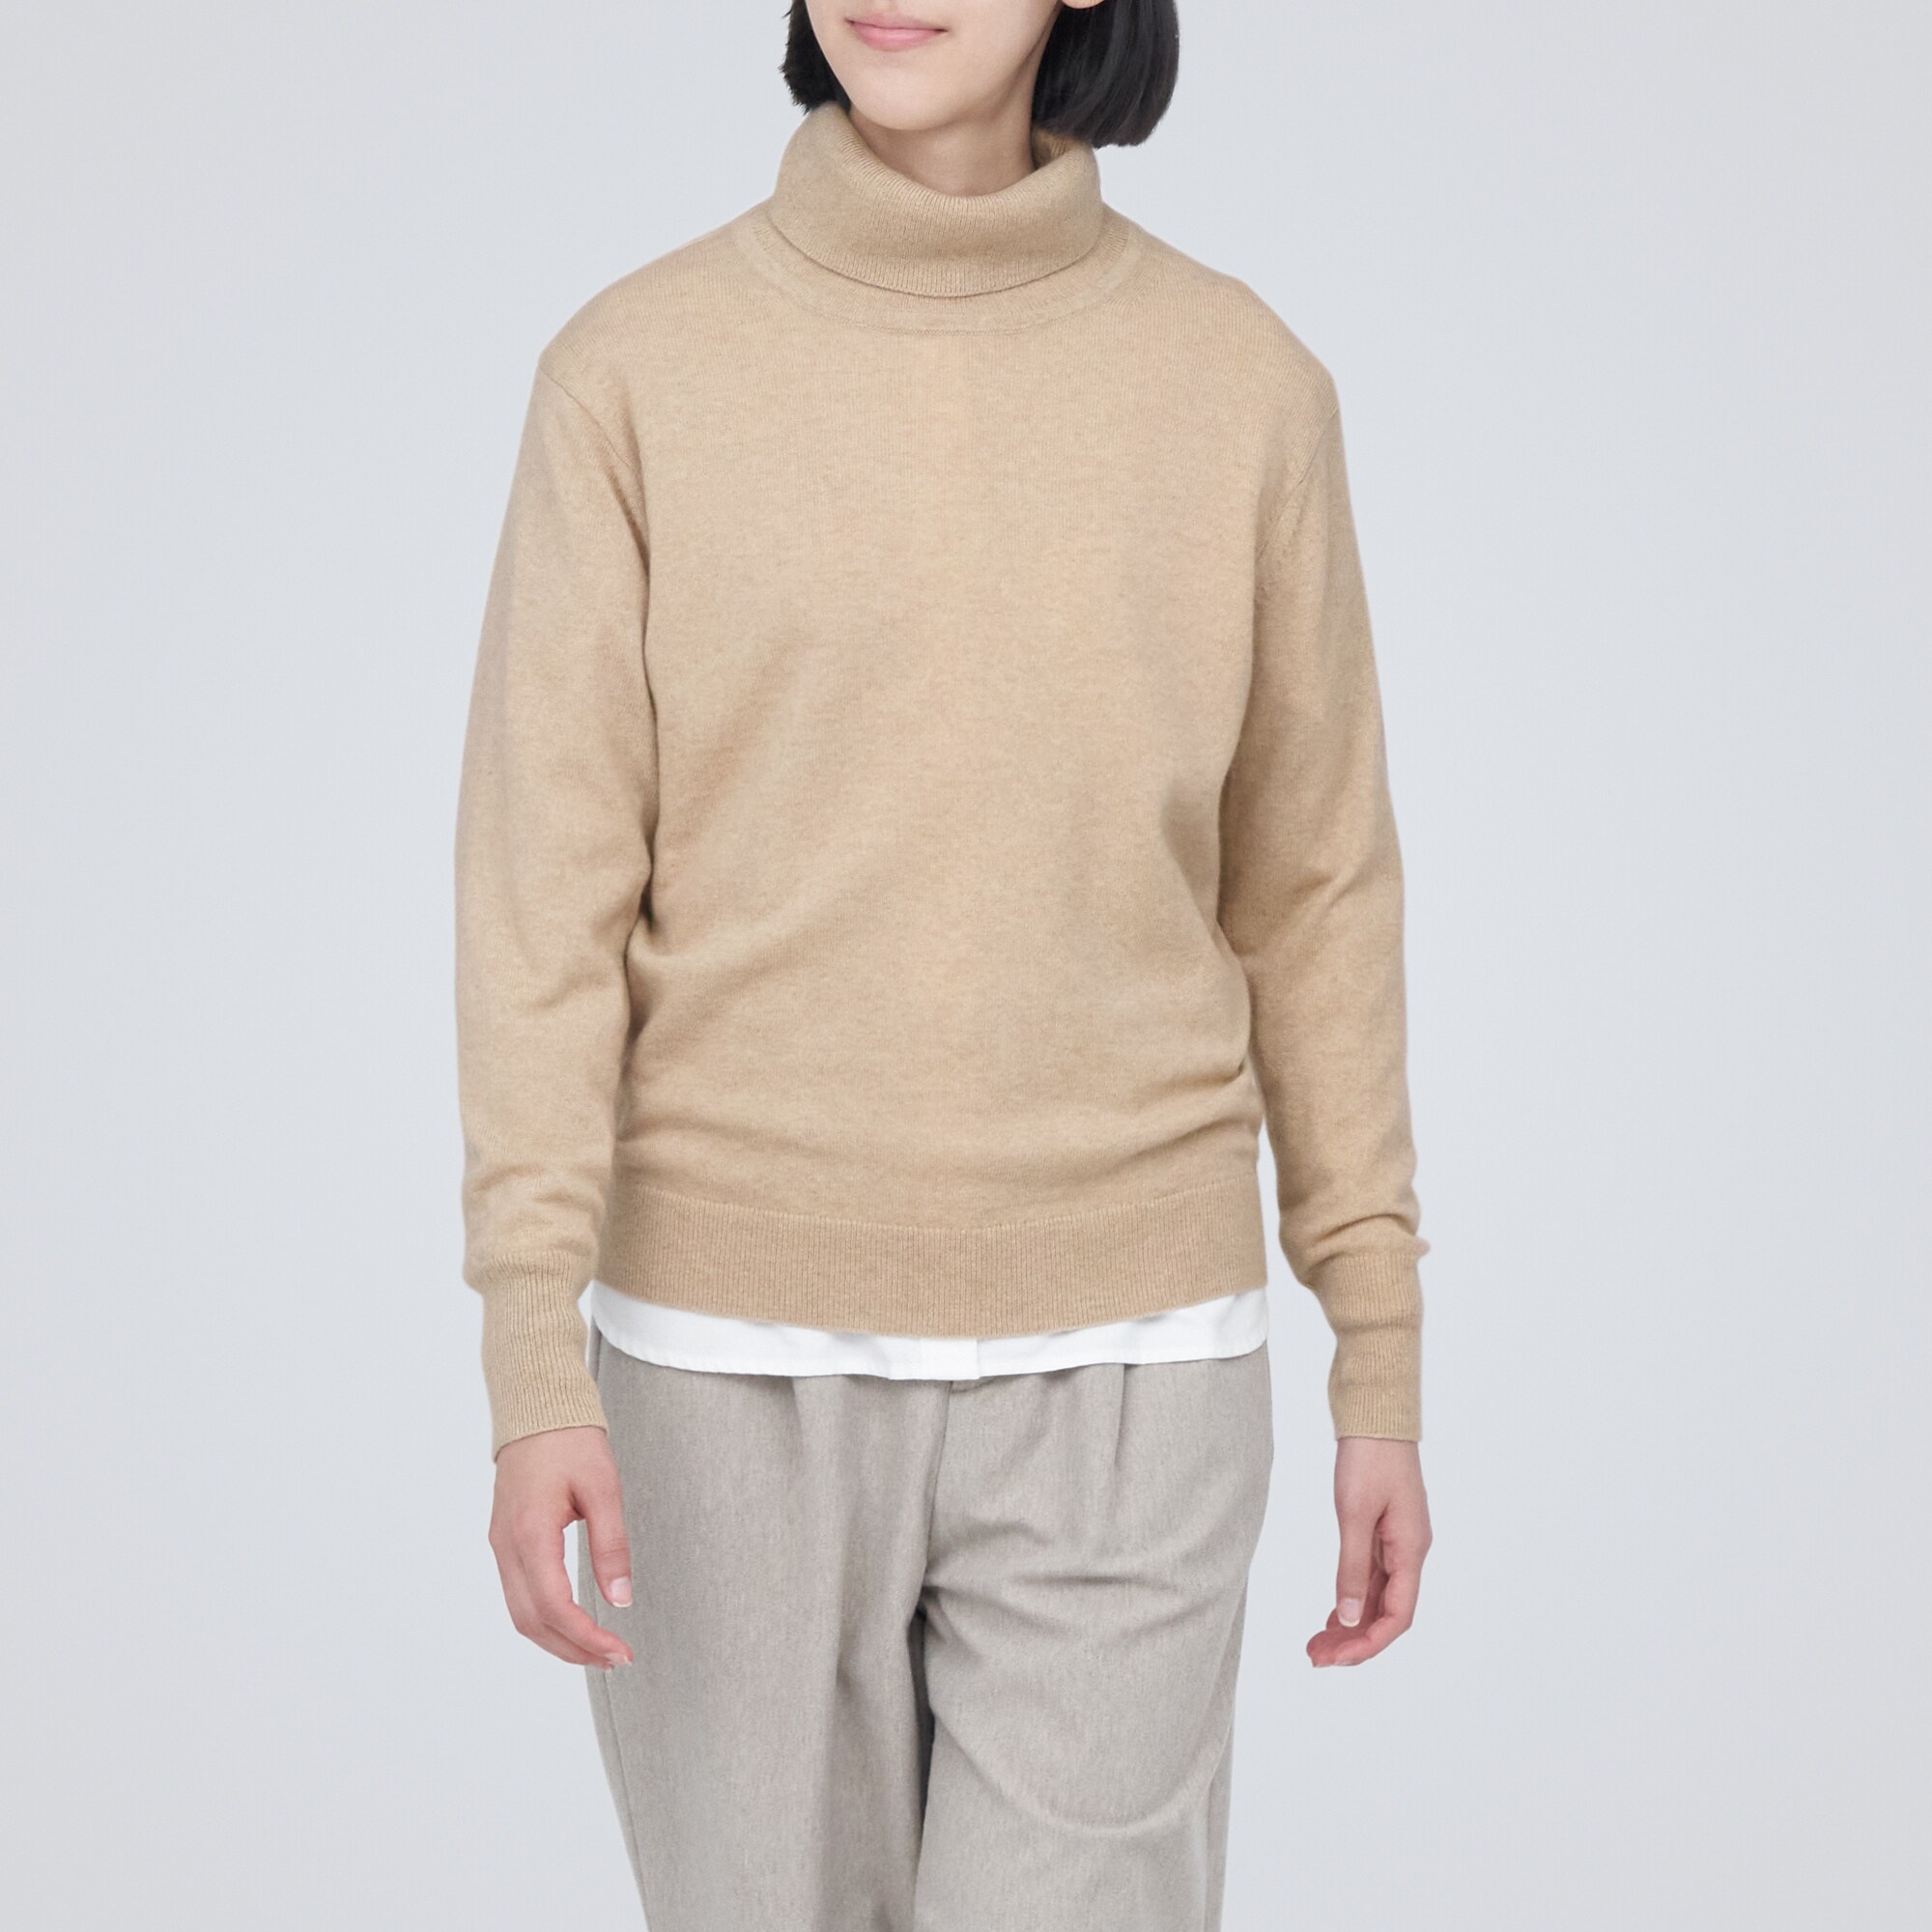 무인양품 일본 자연색 캐시미어 터틀넥 스웨터